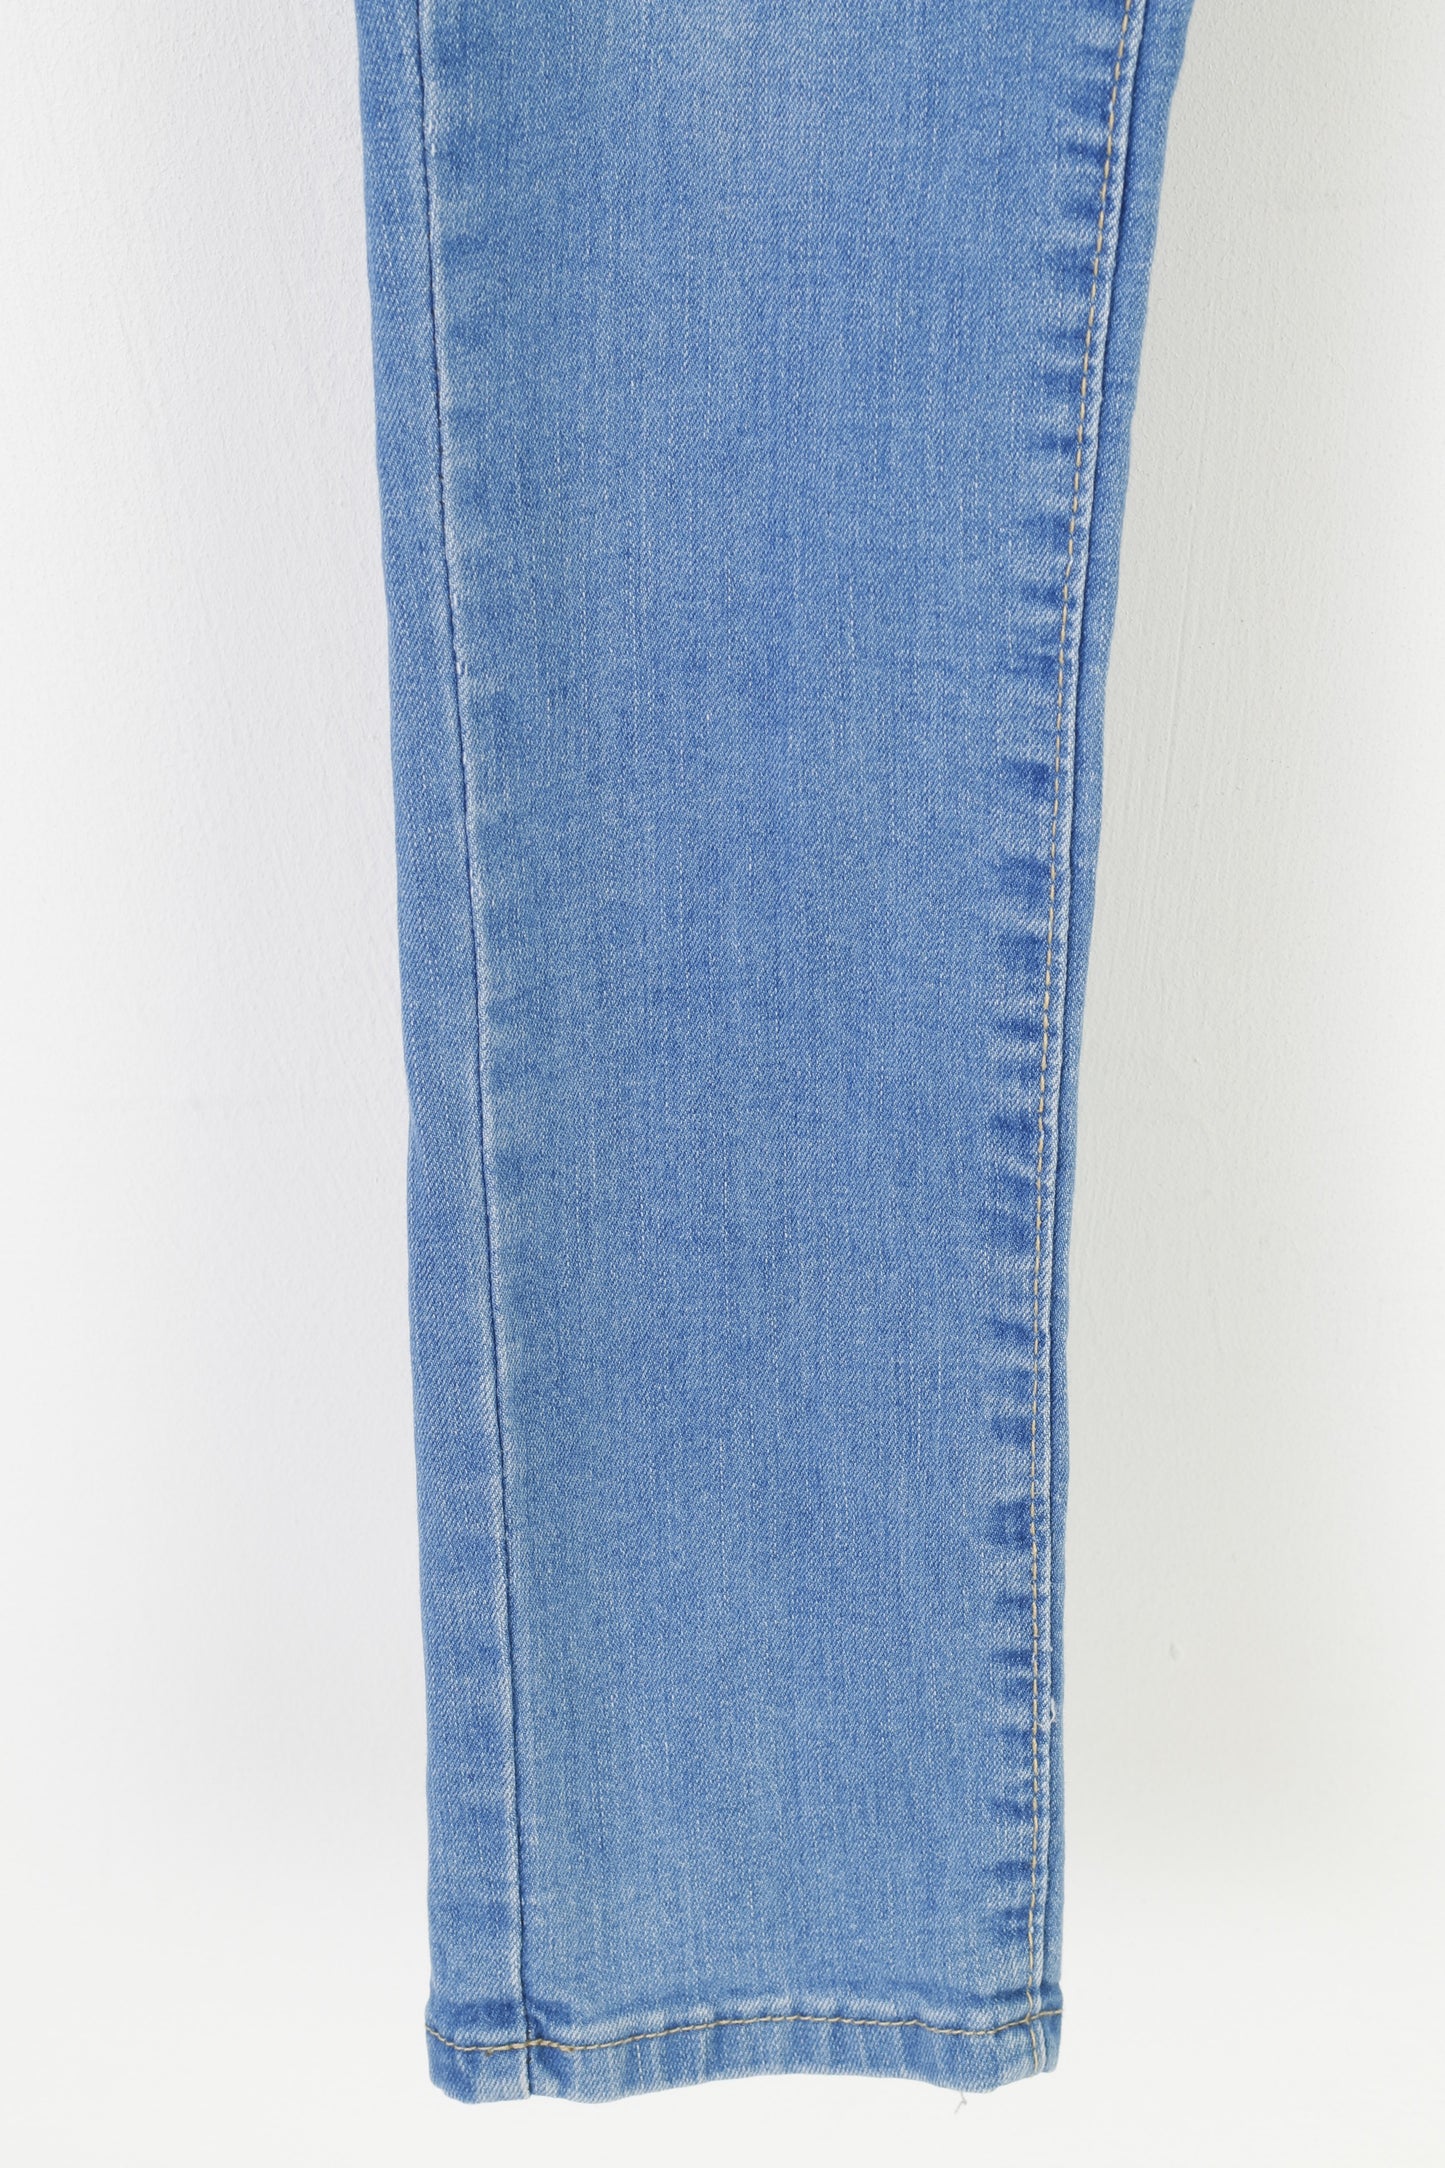 Jeans Wear Women 30 Trousers Denim Jeans Skinny Pepsi Vintage Pants